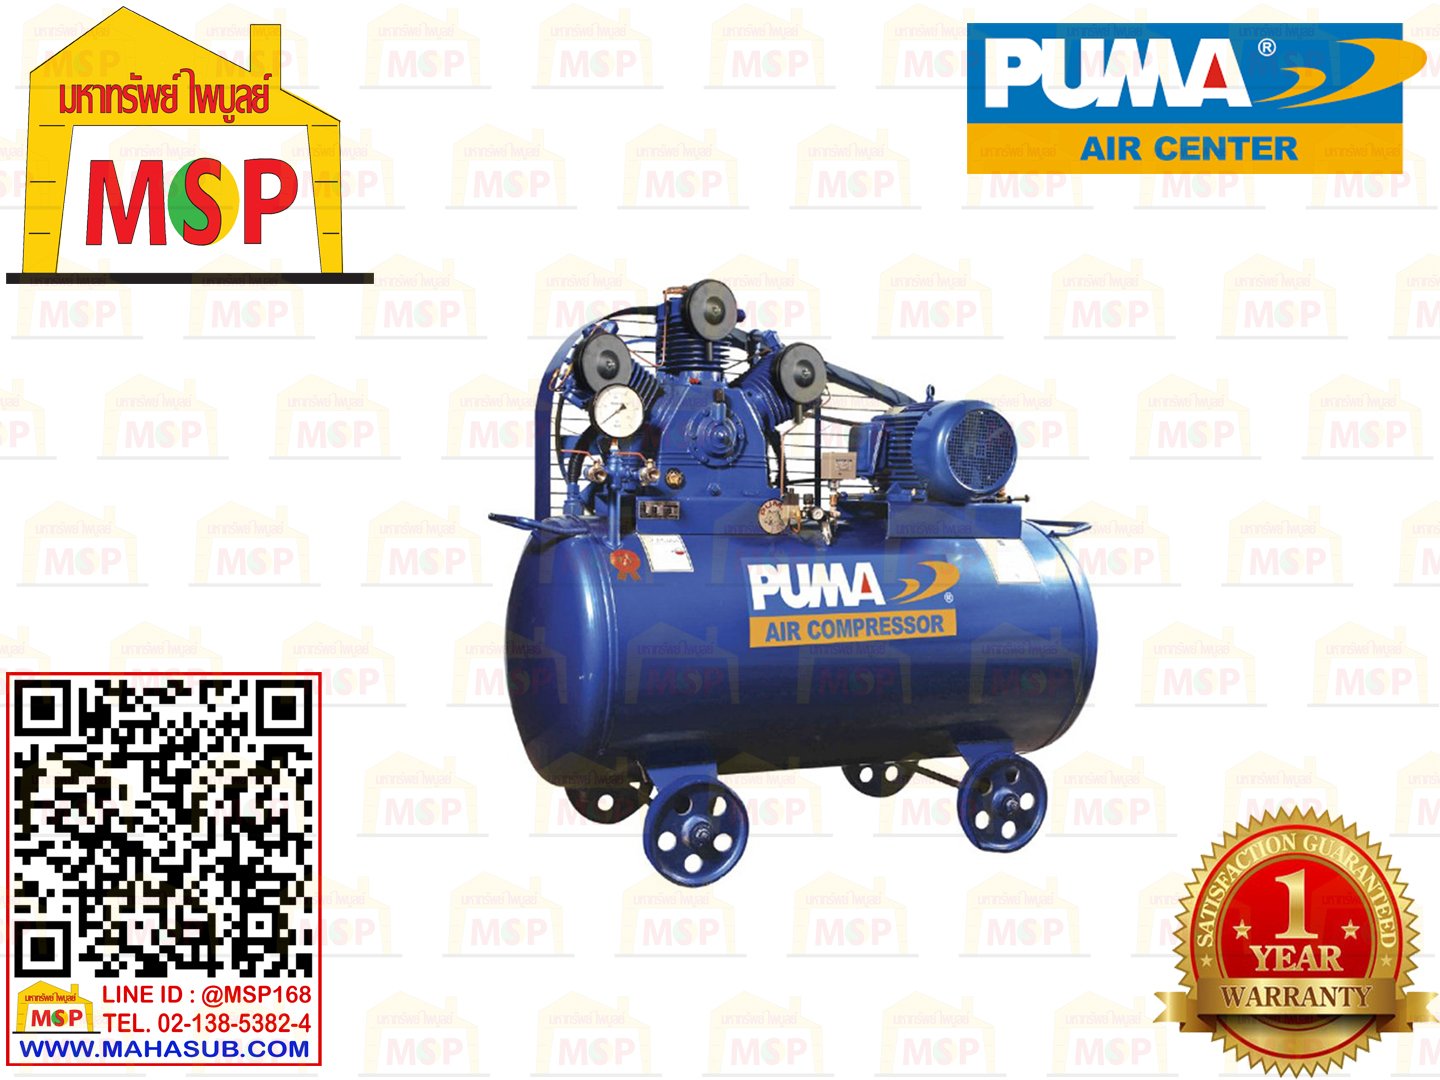 Puma เฉพาะ ถังปั๊มลมพร้อมหัวปั๊ม PP-320 20HP 3ลูกสูบ 700L 8BAR ไม่รวมมอเตอร์